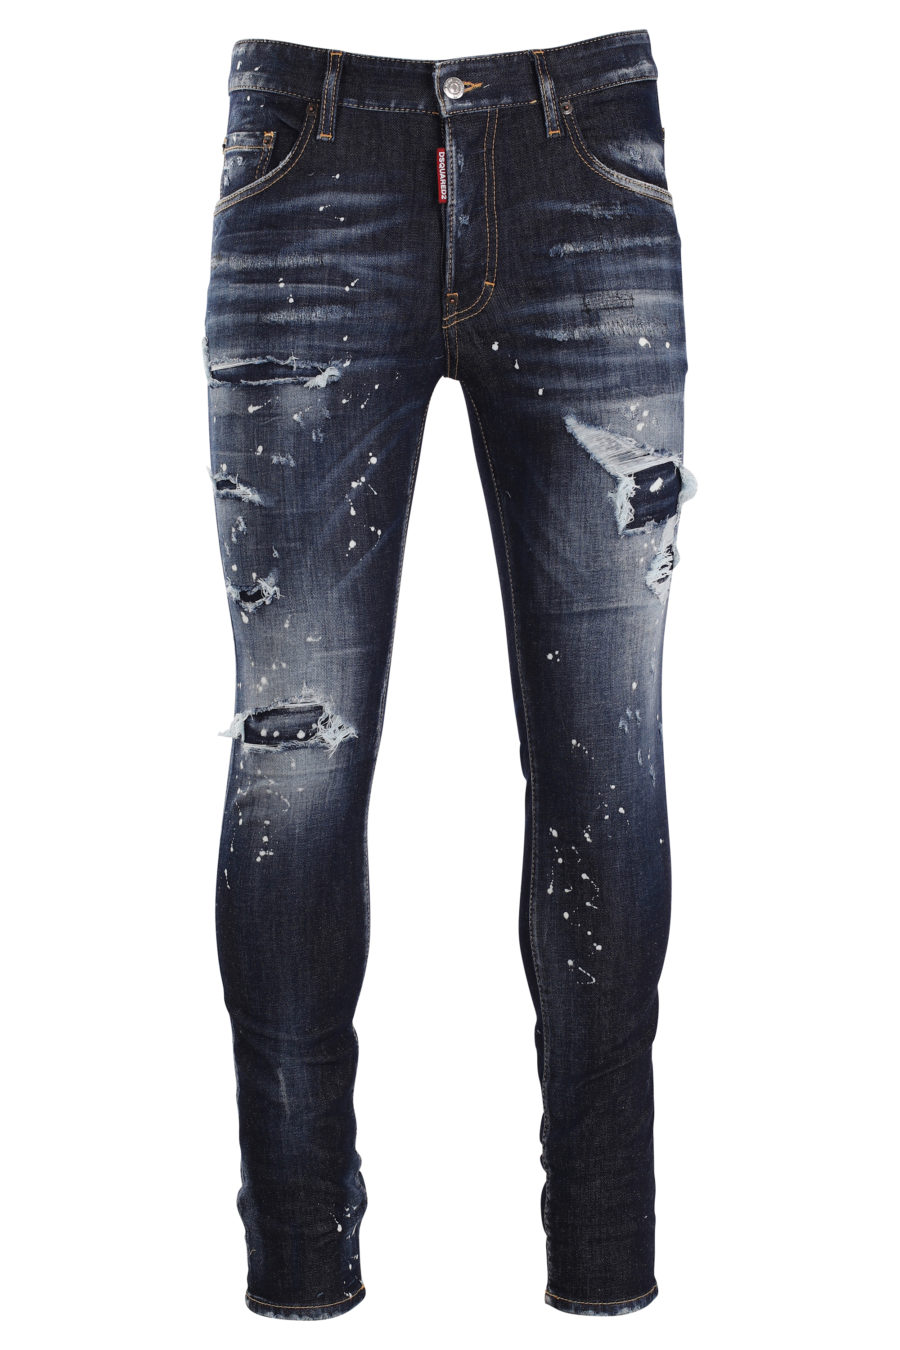 Superschicke blaue Jeans mit weißer Farbe - IMG 9967